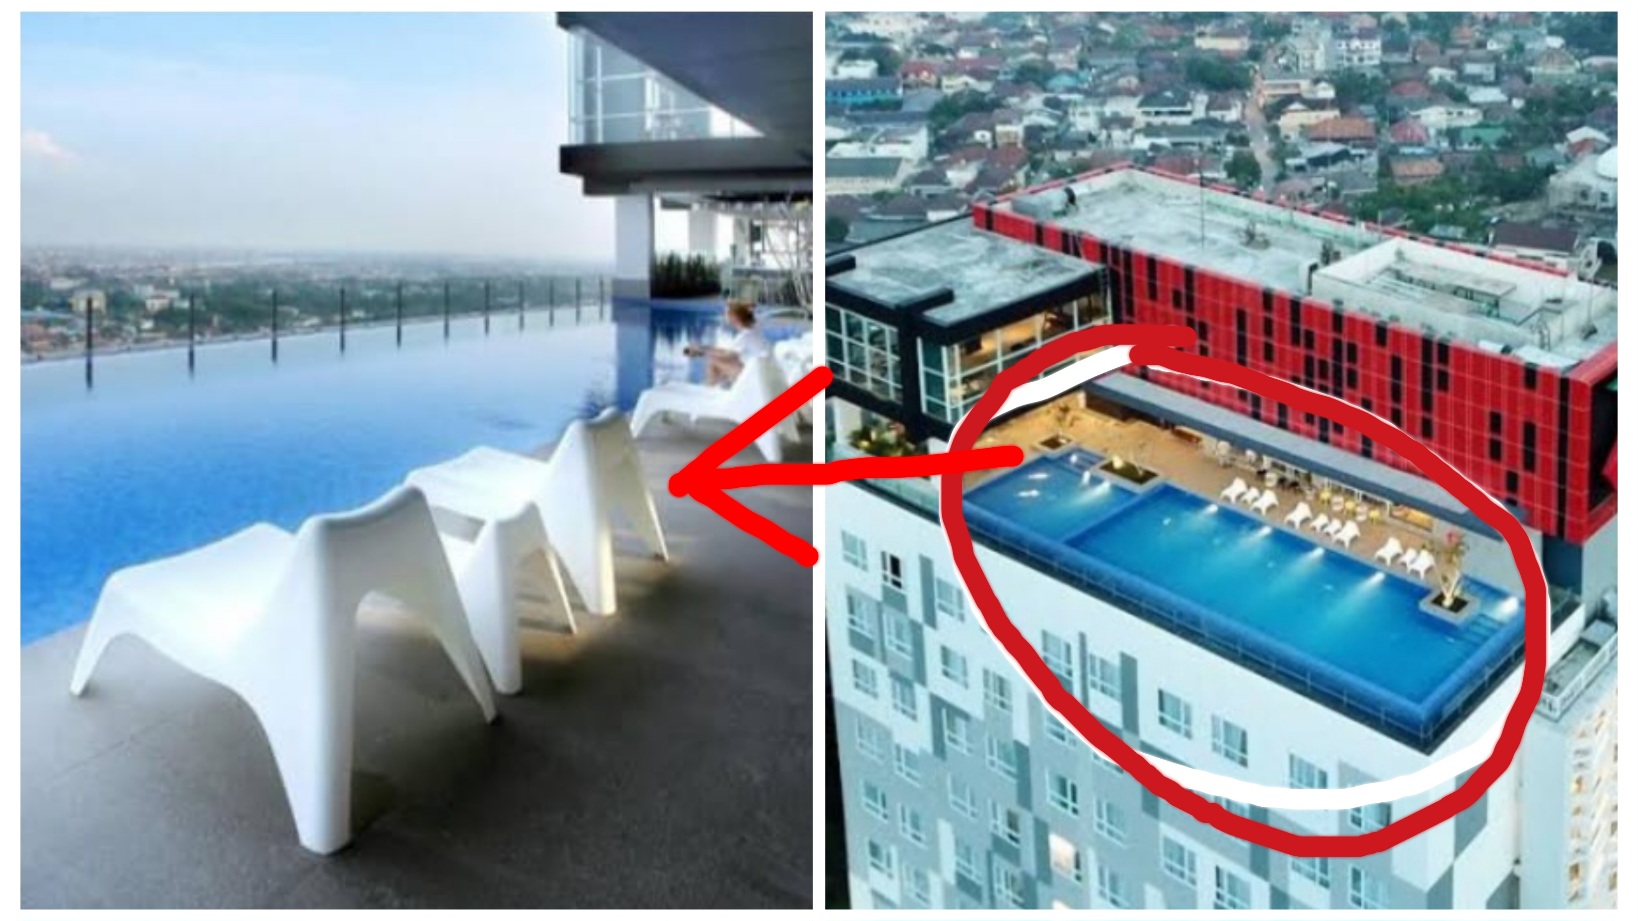 Nginap di Hotel Tertinggi di Palembang, Berasa Tidur dan Berenang di Atas Awan, Lantai 25 Panorama Indah